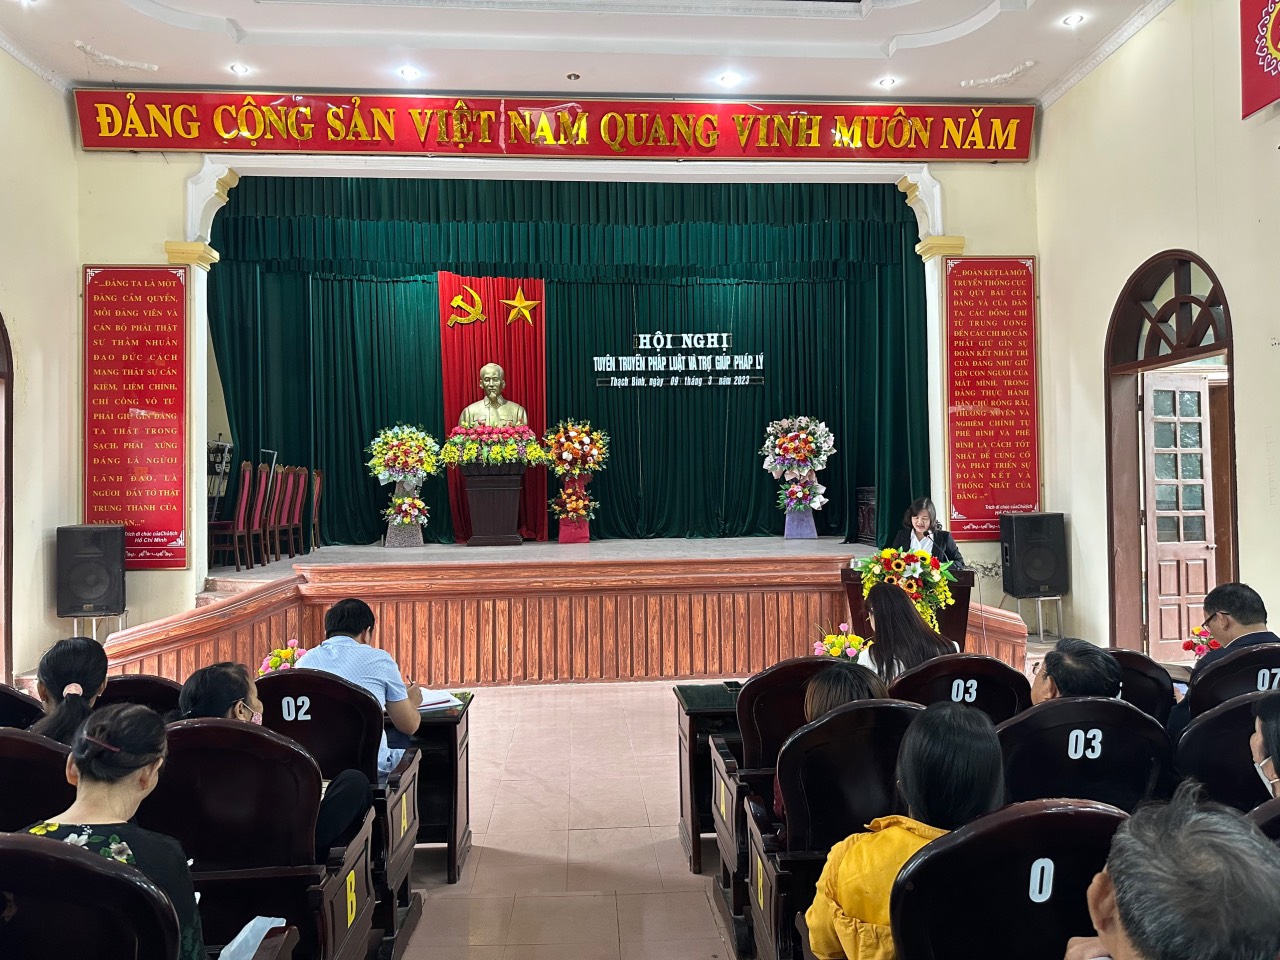 Trung tâm Trợ giúp pháp lý Nhà nước tỉnh Ninh Bình tổ chức Hội nghị tuyên truyền pháp luật và trợ giúp pháp lý tại các xã trên địa bàn huyện Nho Quan.